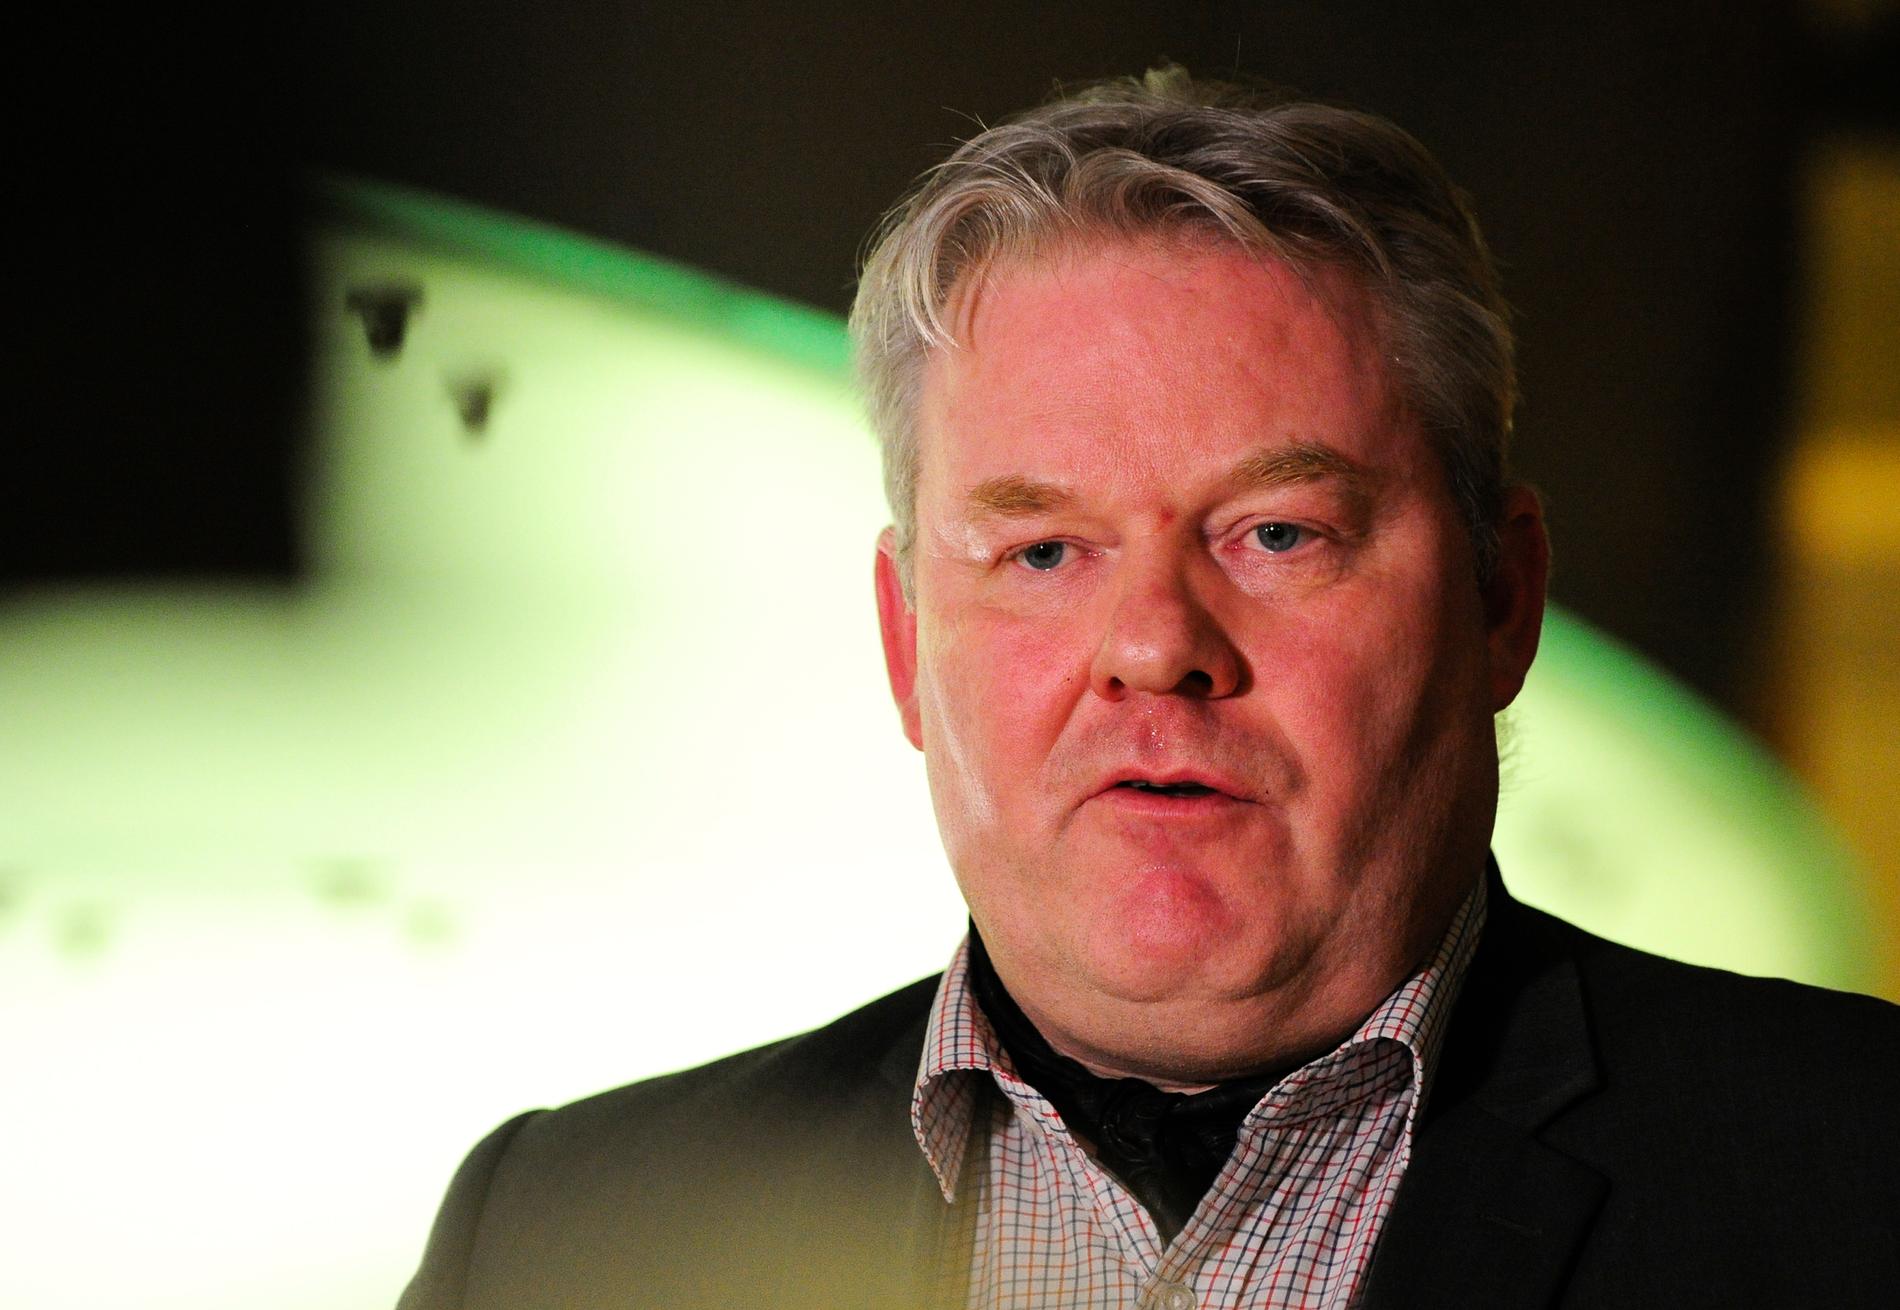 OVERTAR: Framskrittspartiets nestleder Sigurdur Ingi Johannsson tar over som statsminister på Island etter Sigmundur Gunnlaugsson. Dette ble bekreftet på en pressekonferanse onsdag kveld.